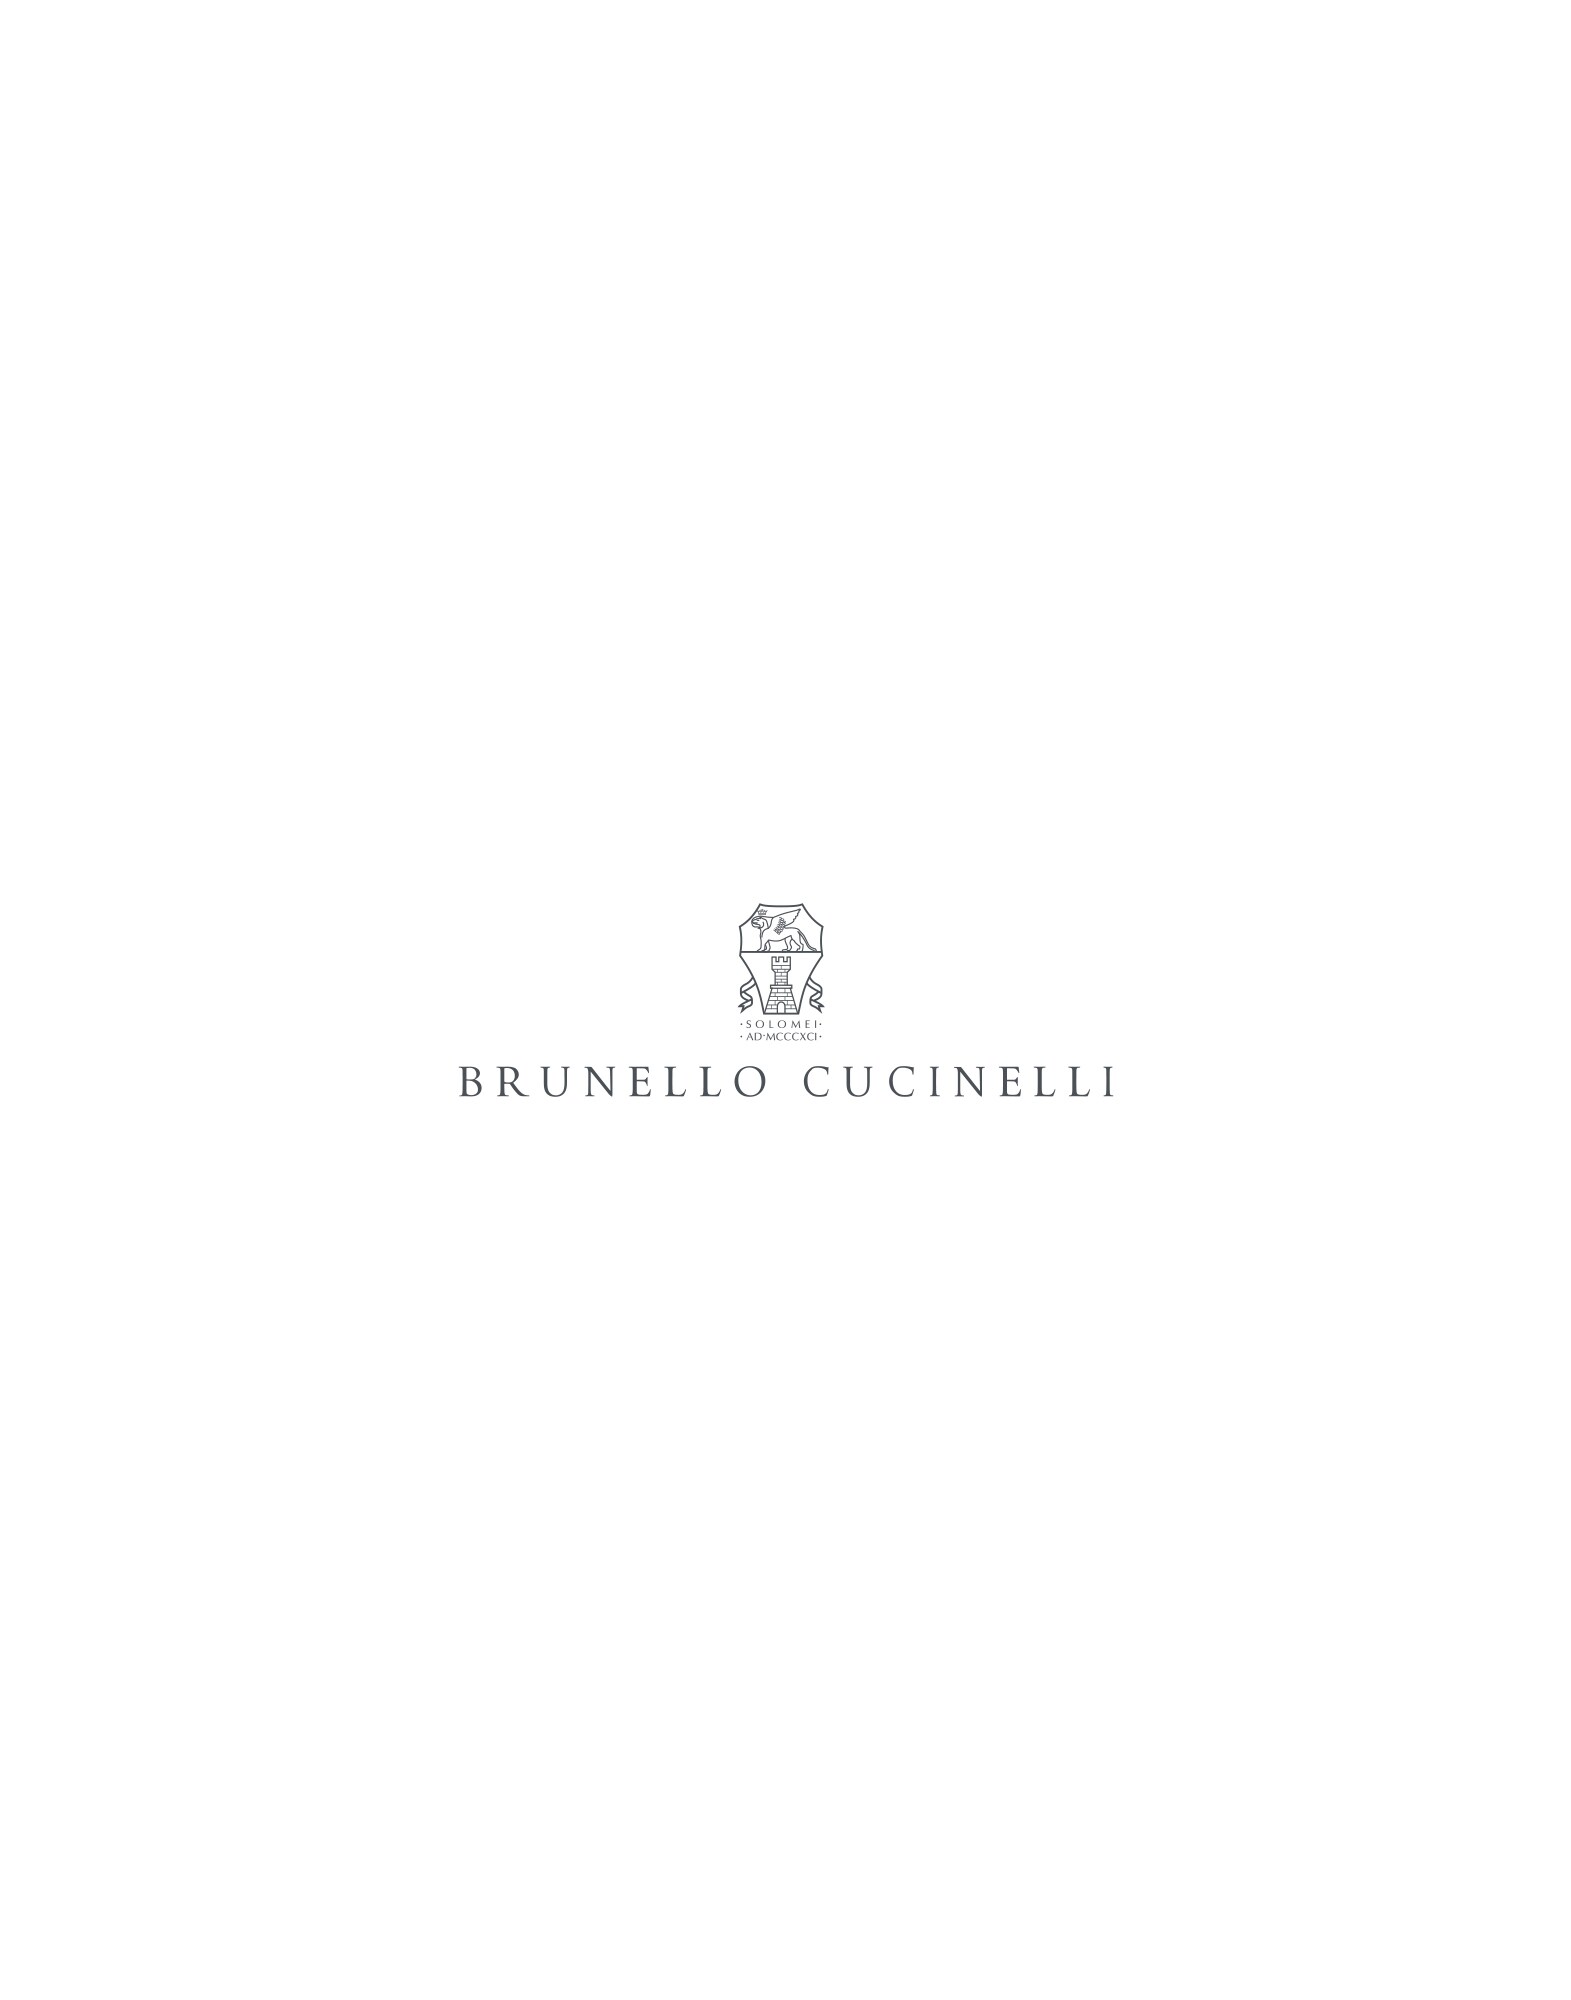 Crop shirt White Woman -
                        Brunello Cucinelli
                    